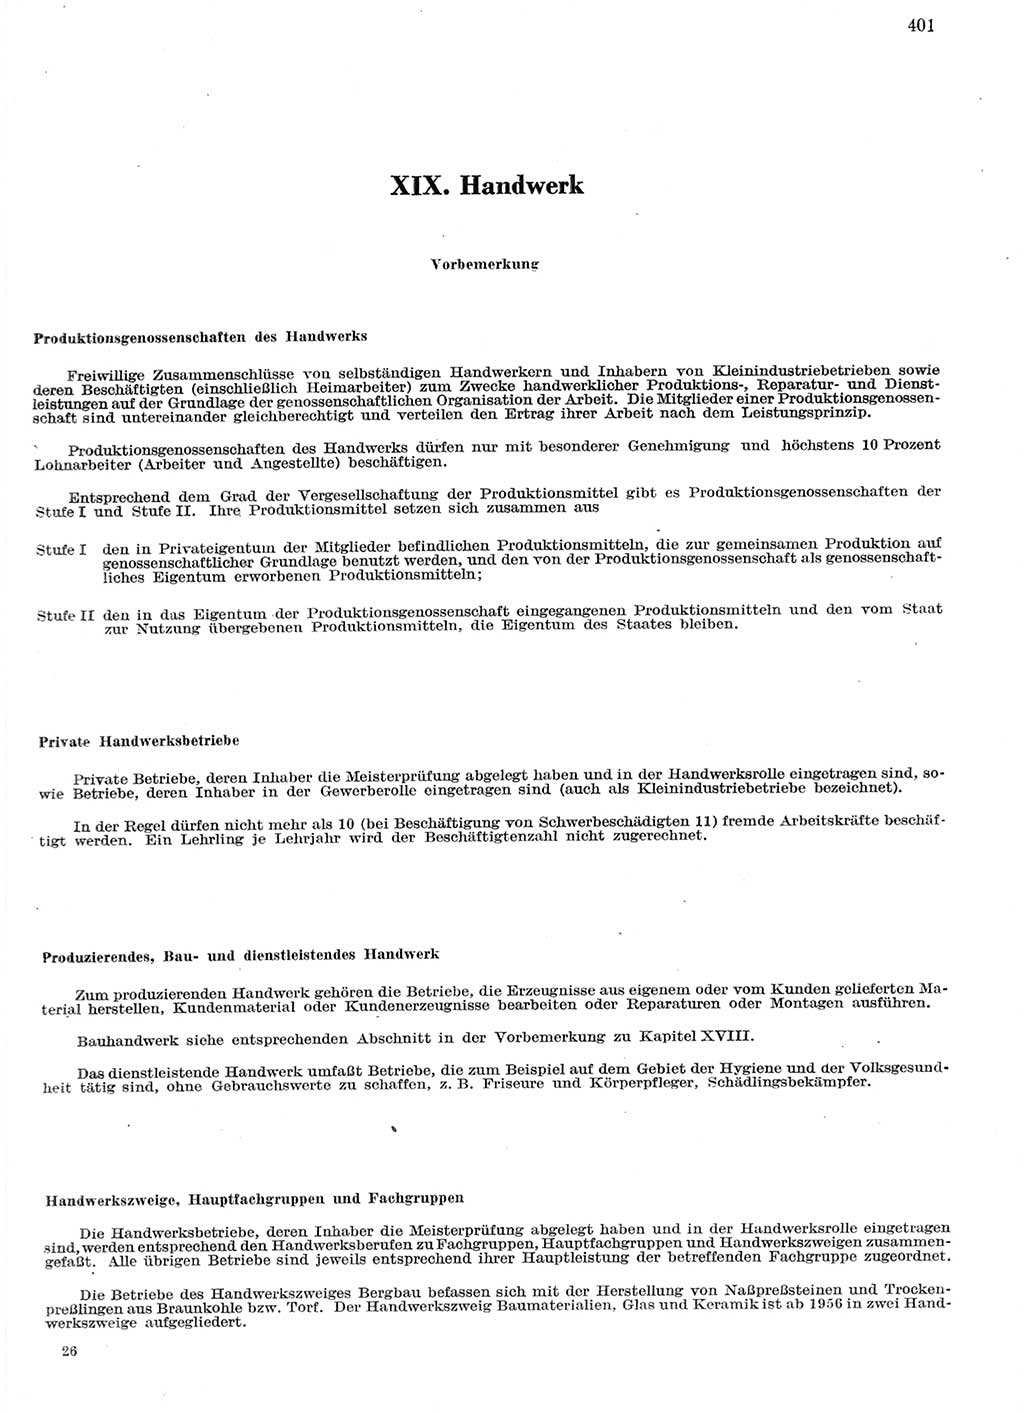 Statistisches Jahrbuch der Deutschen Demokratischen Republik (DDR) 1959, Seite 401 (Stat. Jb. DDR 1959, S. 401)